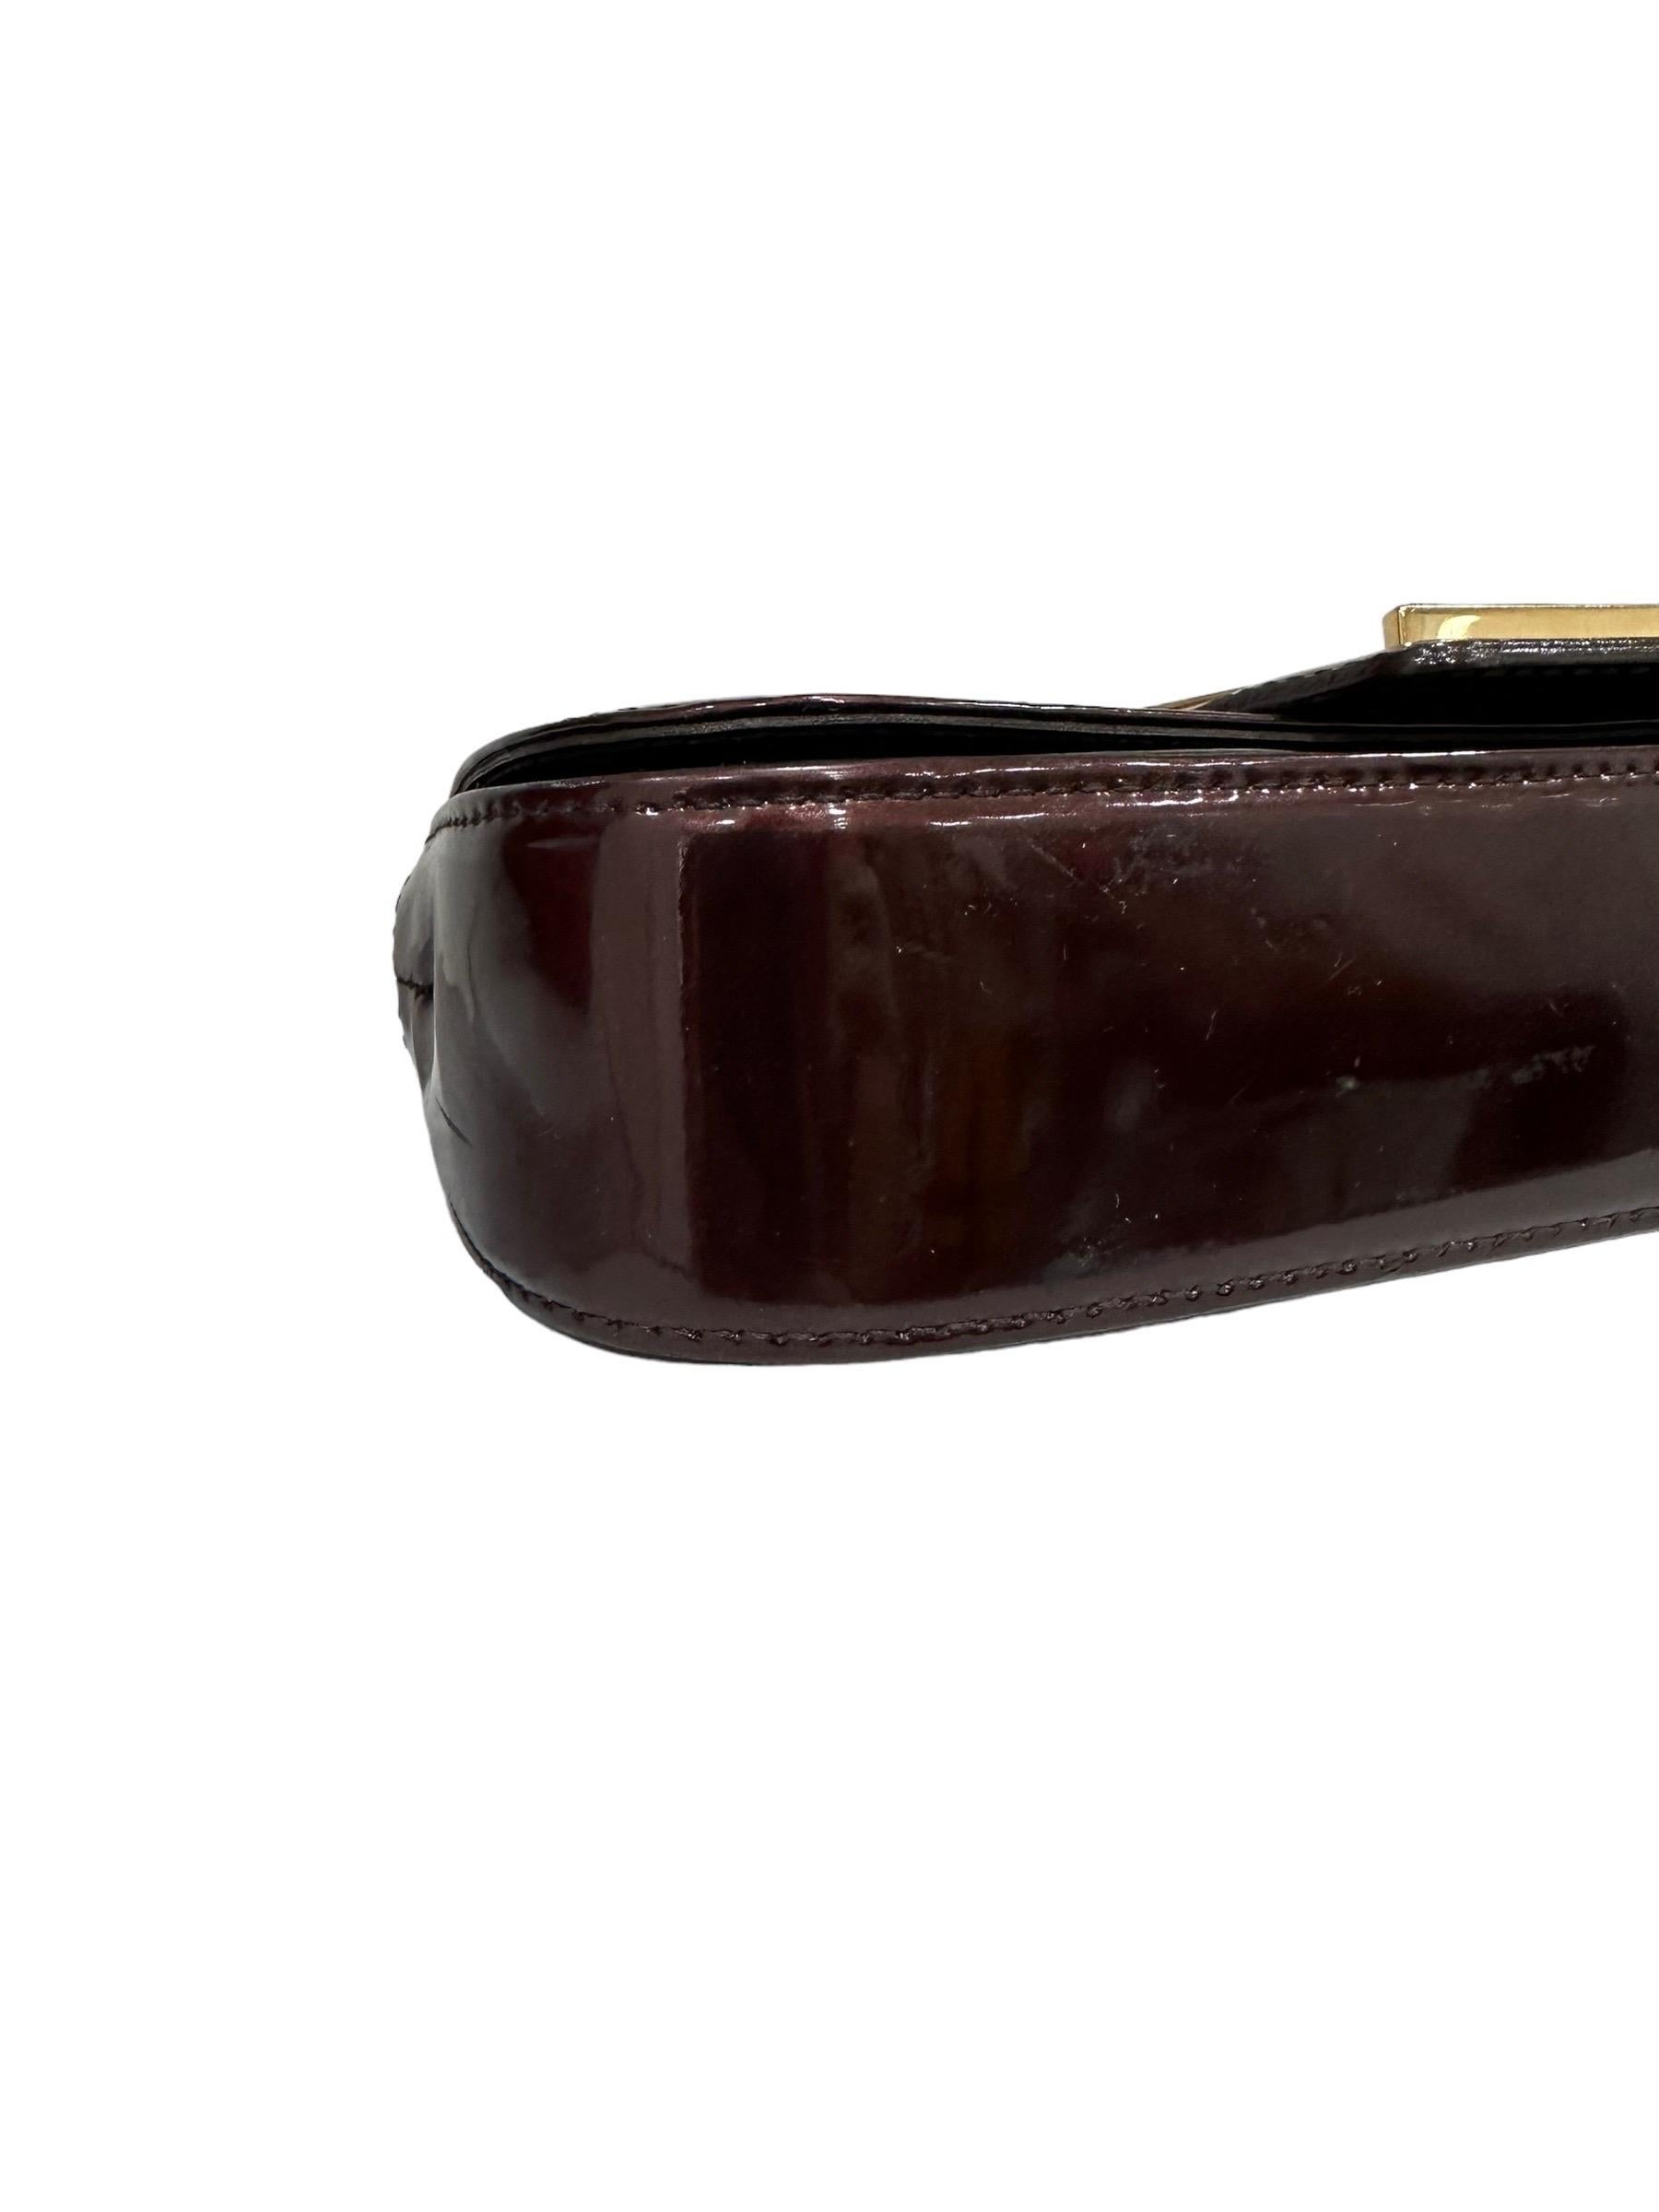 Louis Vuitton Sobe Clutch Bordeaux Patent Leather For Sale 2